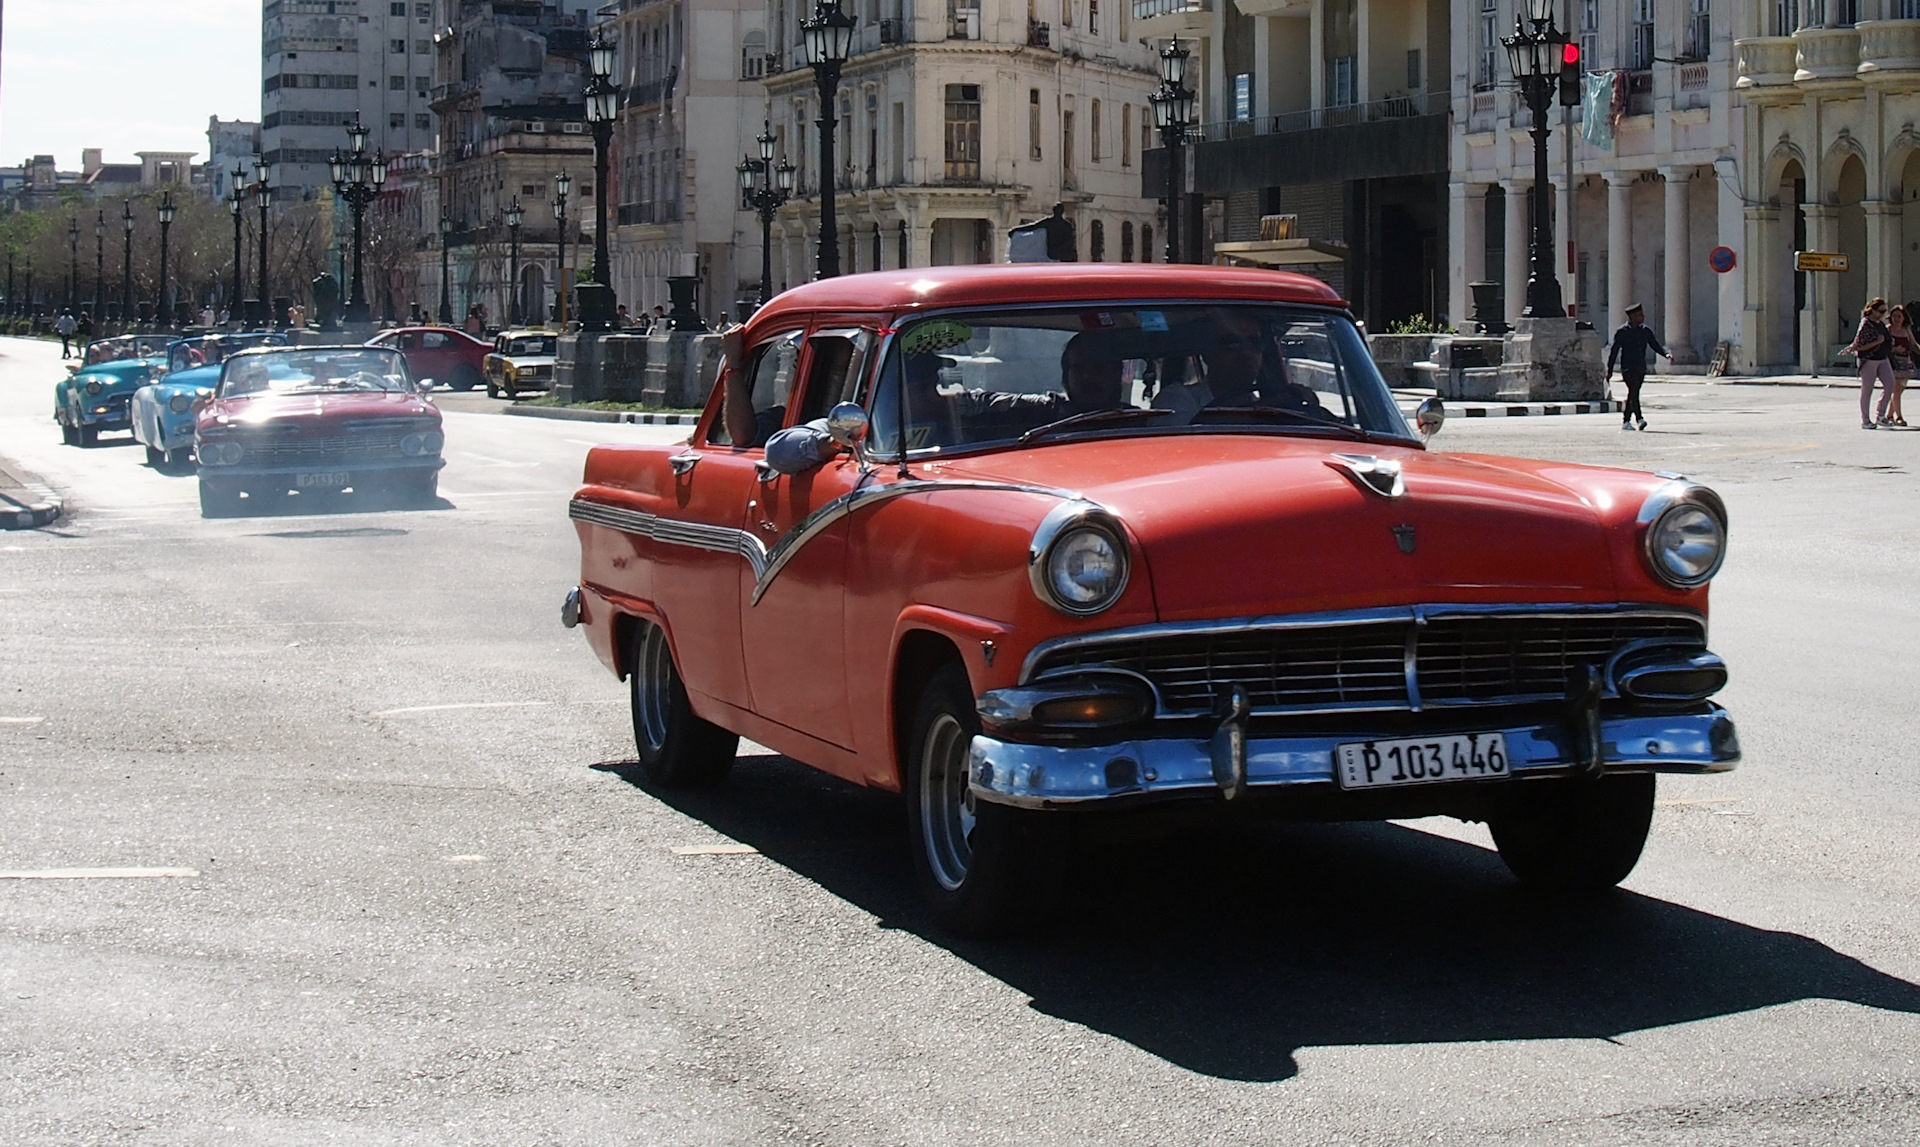 Кубинский номер. Автономера Кубы. Куба автомобили. Кубинские автомобильные номера. Правительственные автомобили Кубы.